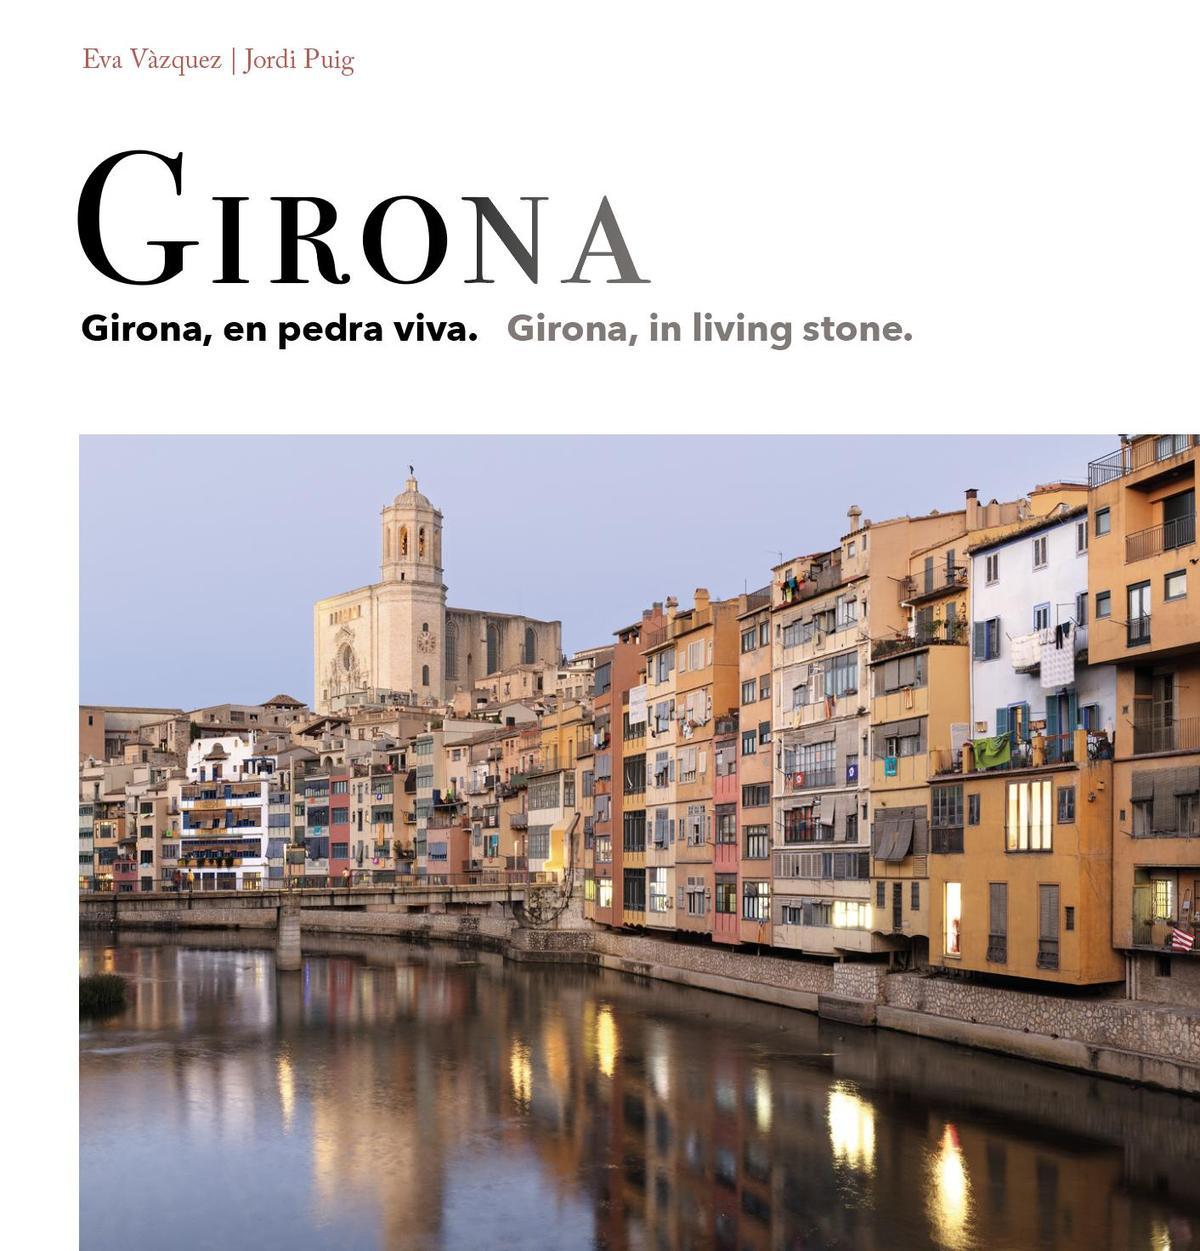 Portada del llibre «Girona, en pedra viva», amb fotografies de Jordi Puig i text d’Eva Vàzquez, que ha editat Triangle Books.